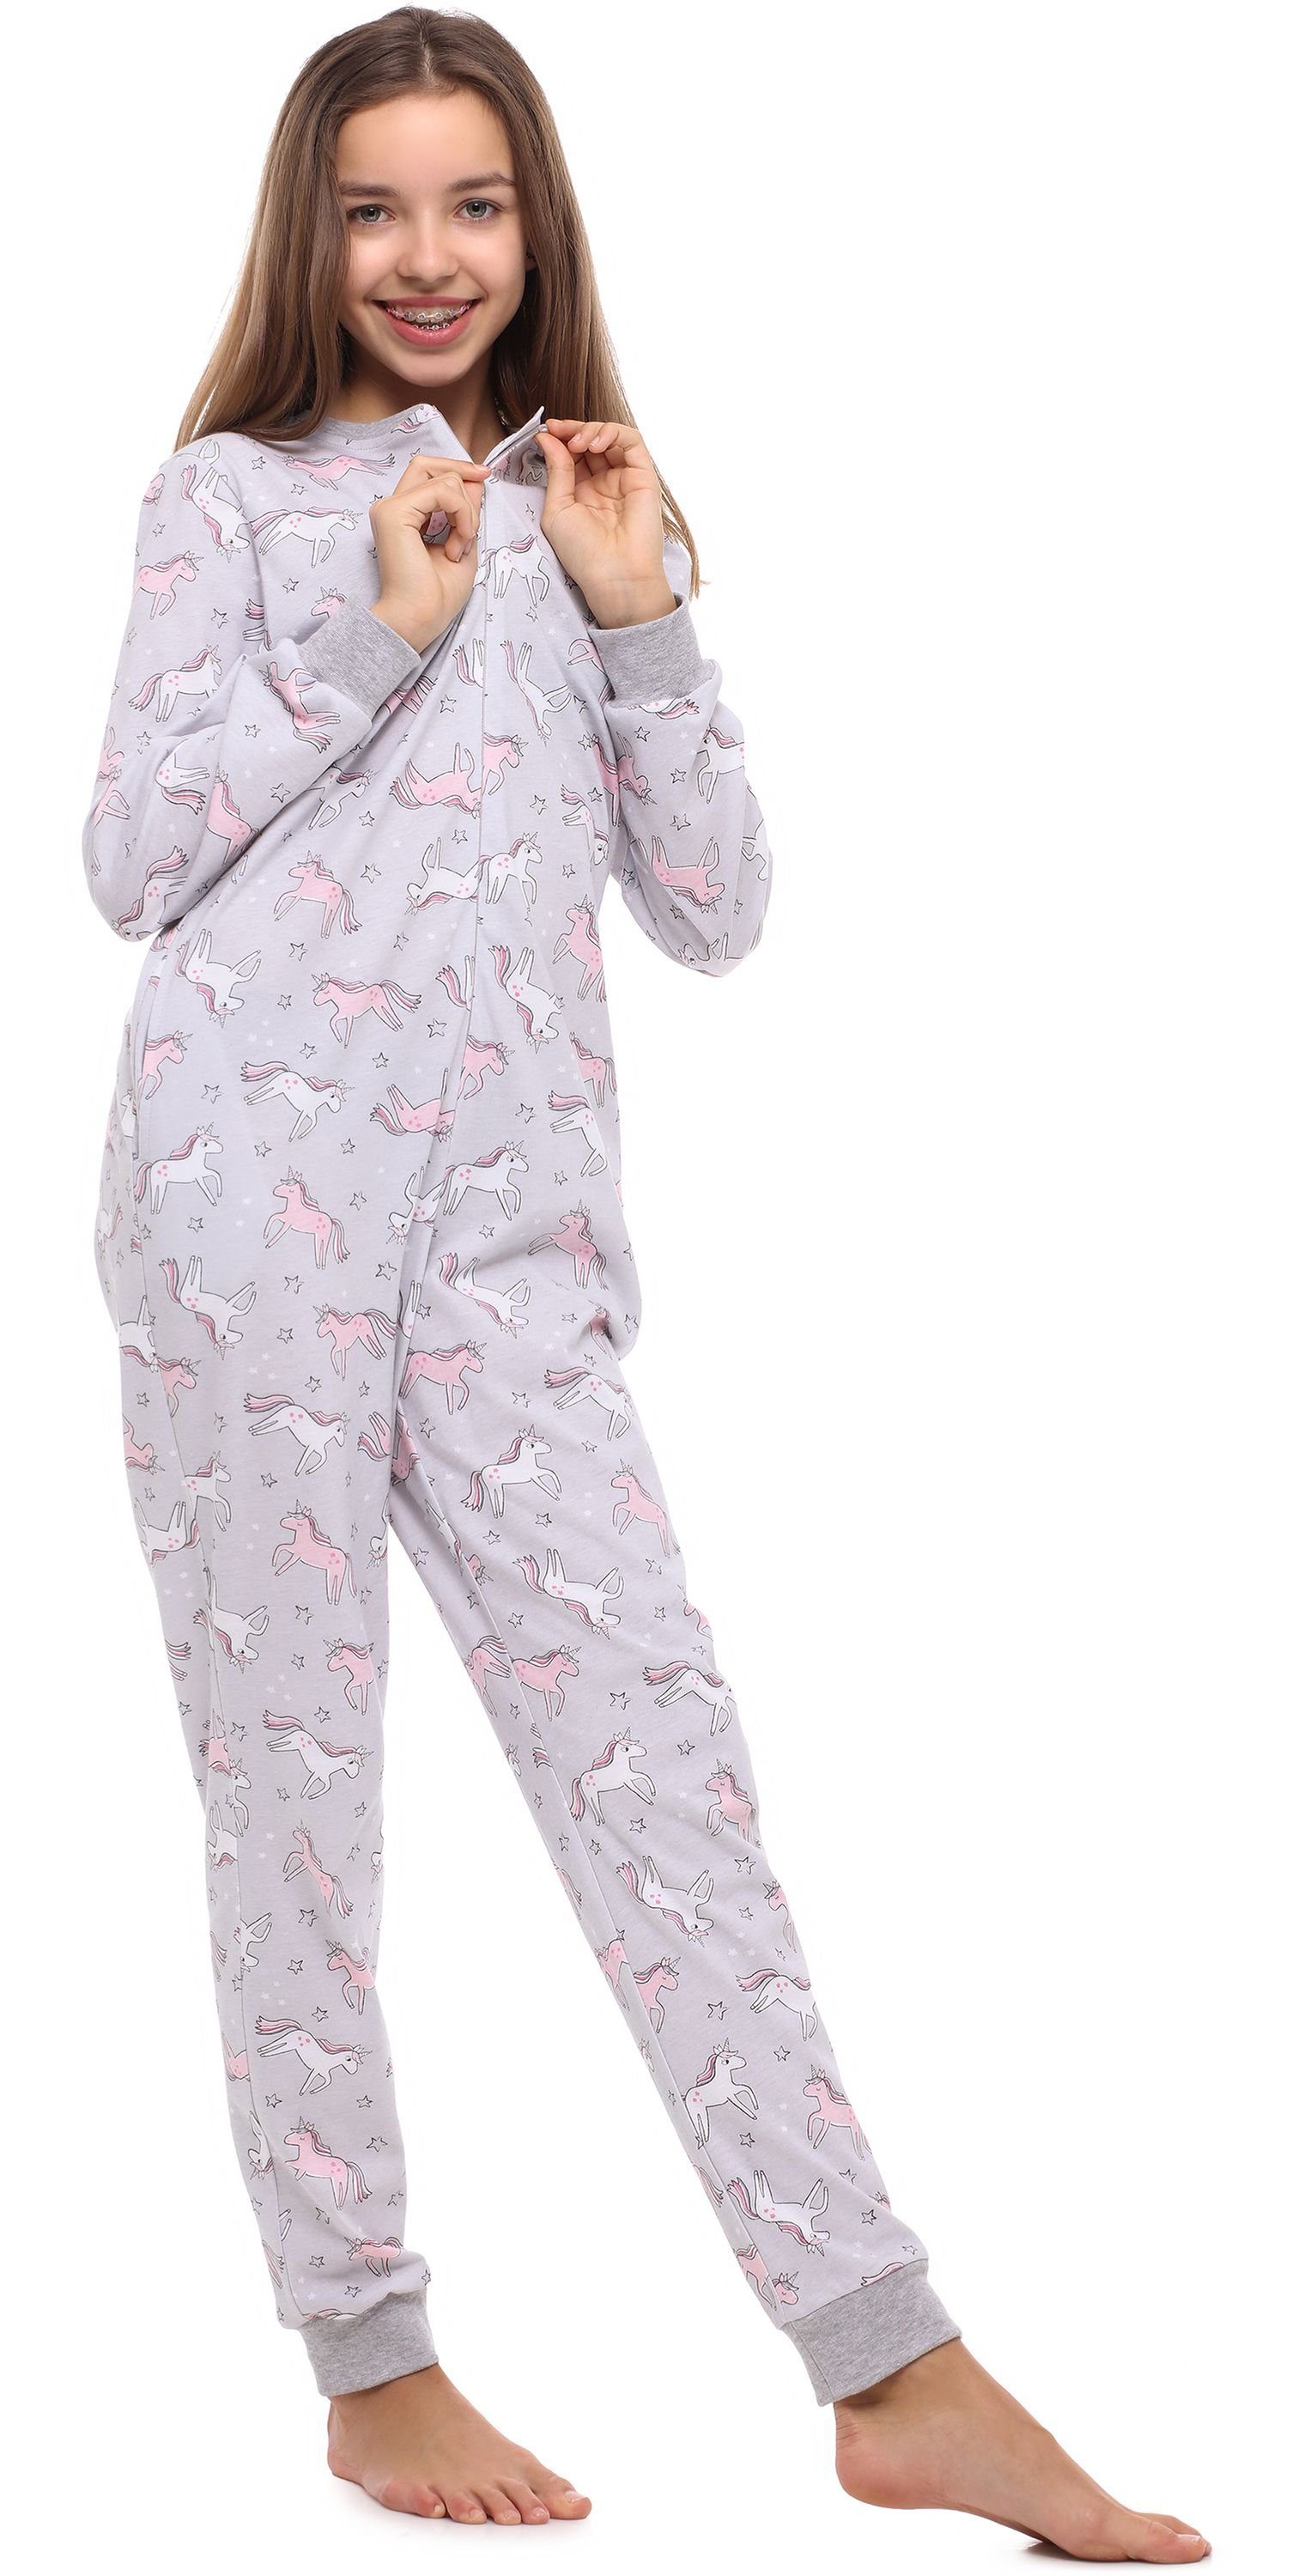 Schlafanzug Schlafanzug Merry Jugend Style Melange/Einhorn Mädchen Schlafoverall MS10-235